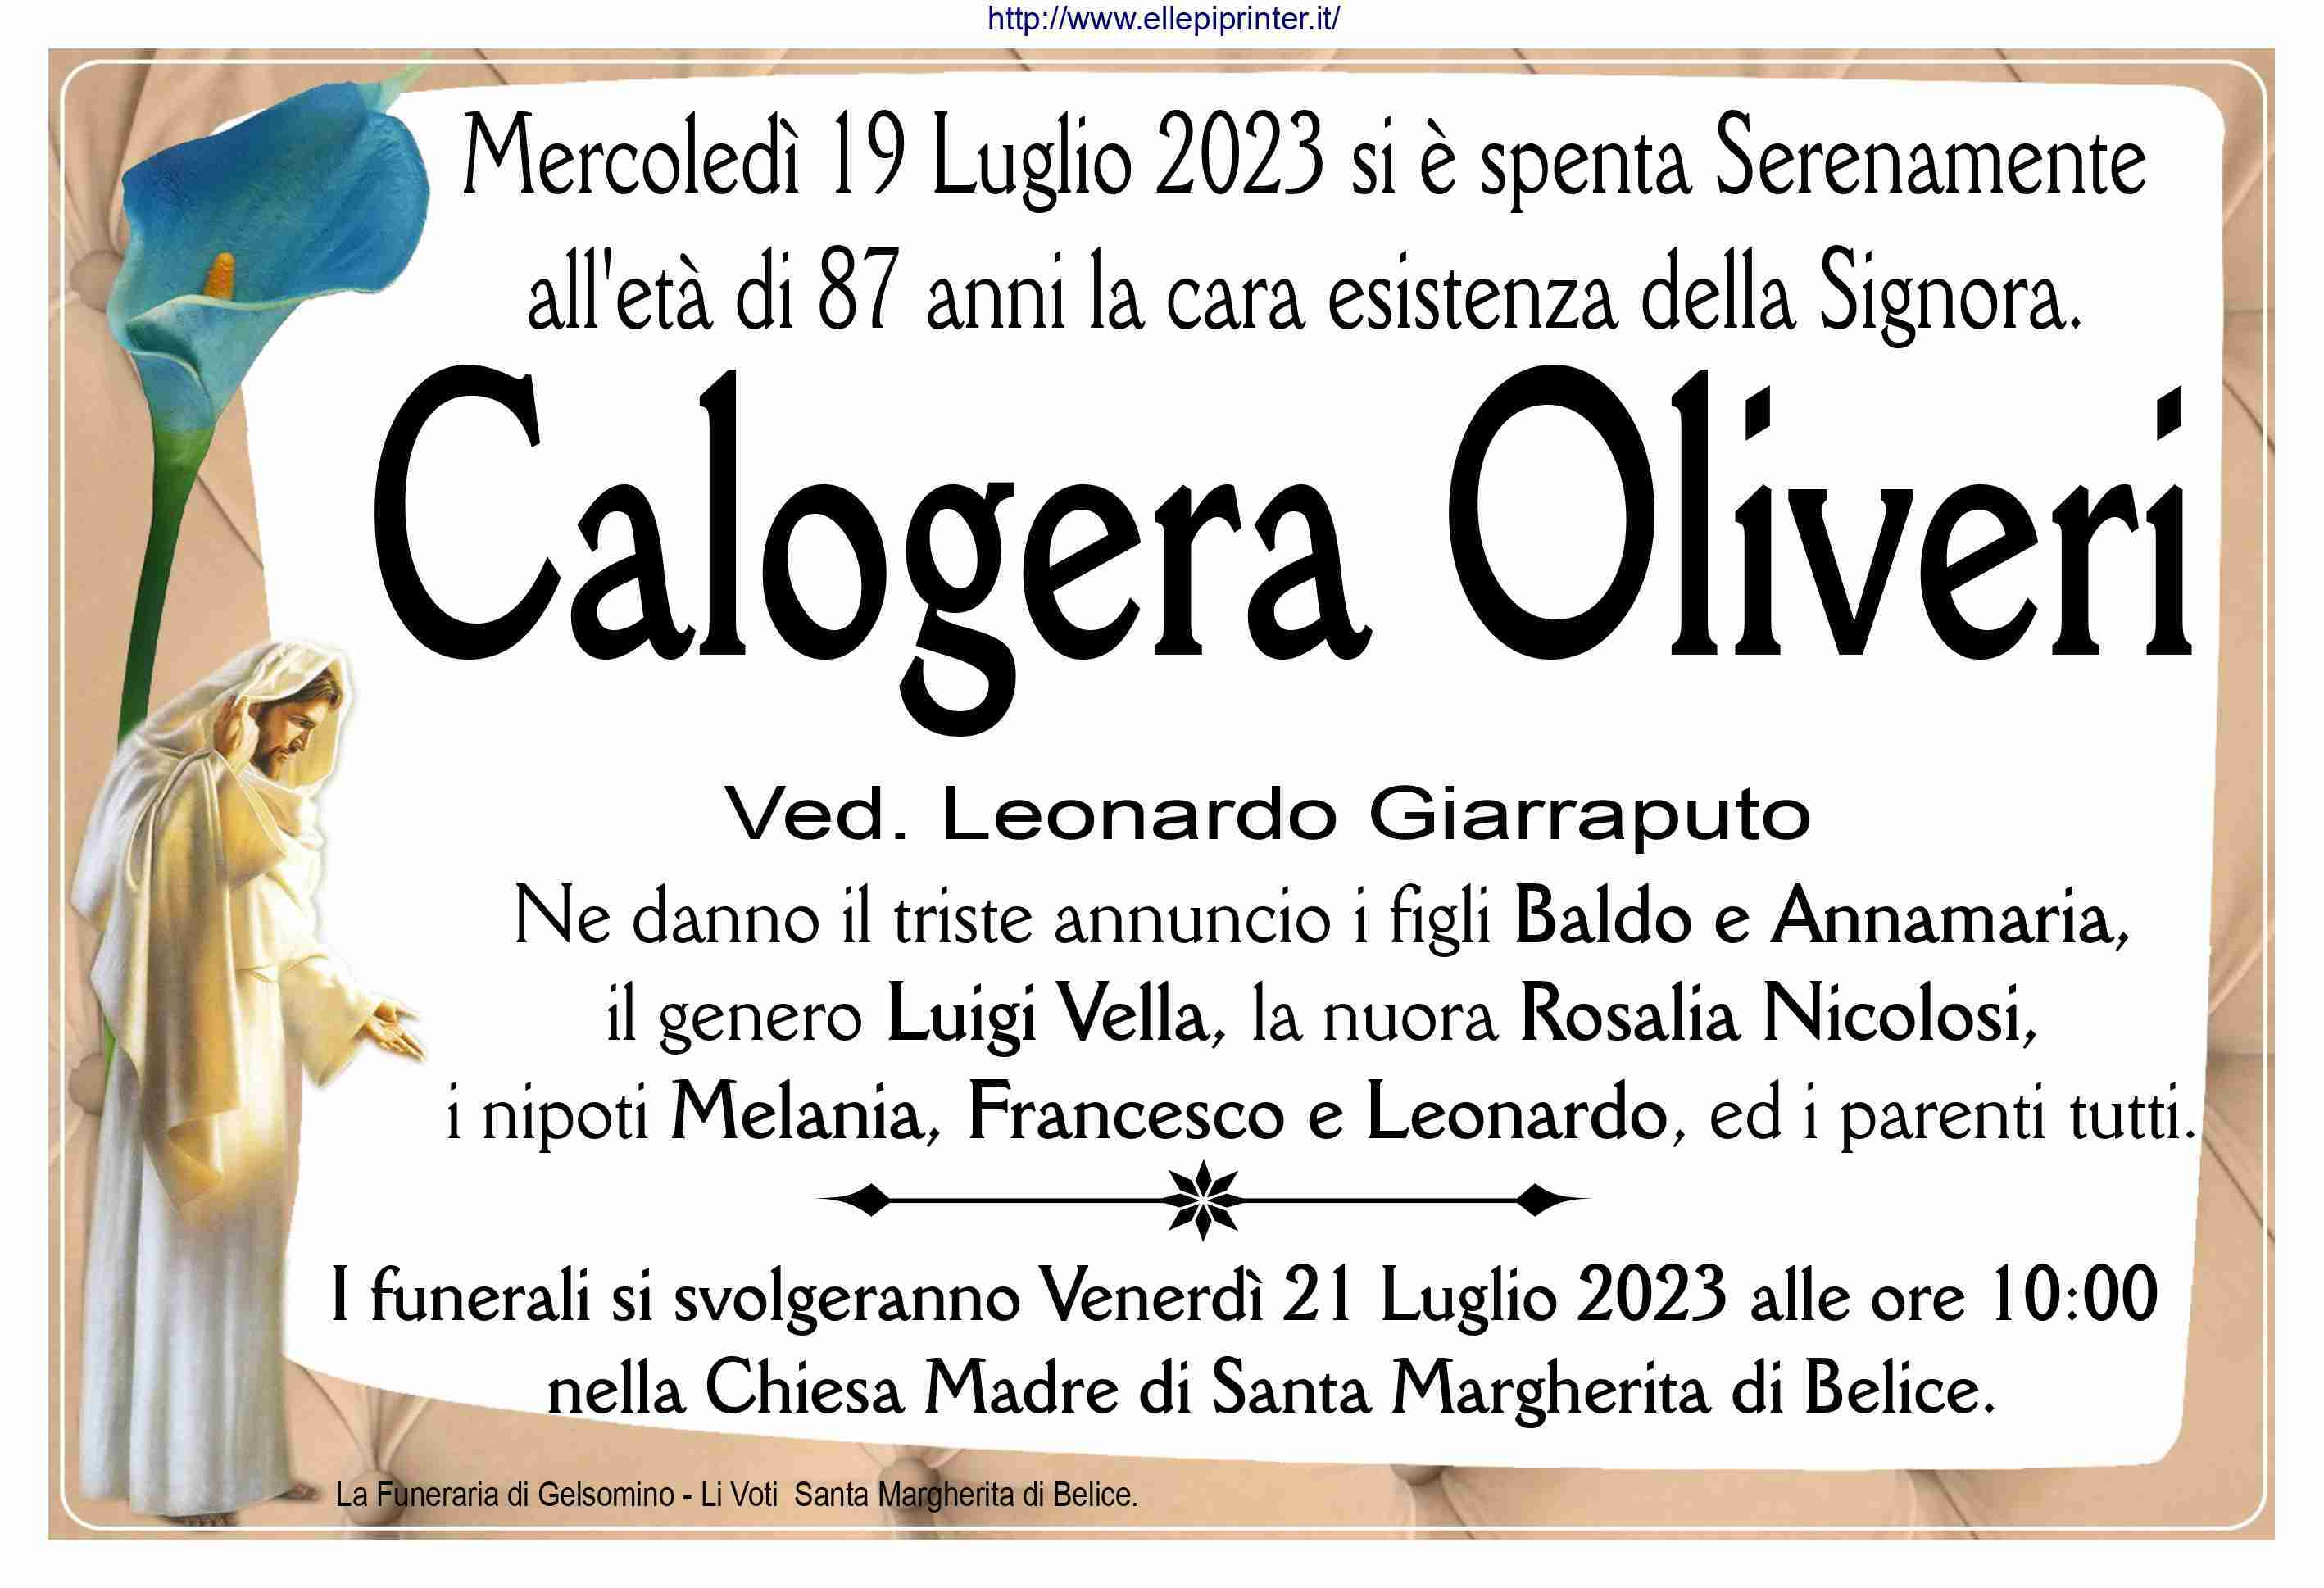 Calogera Oliveri